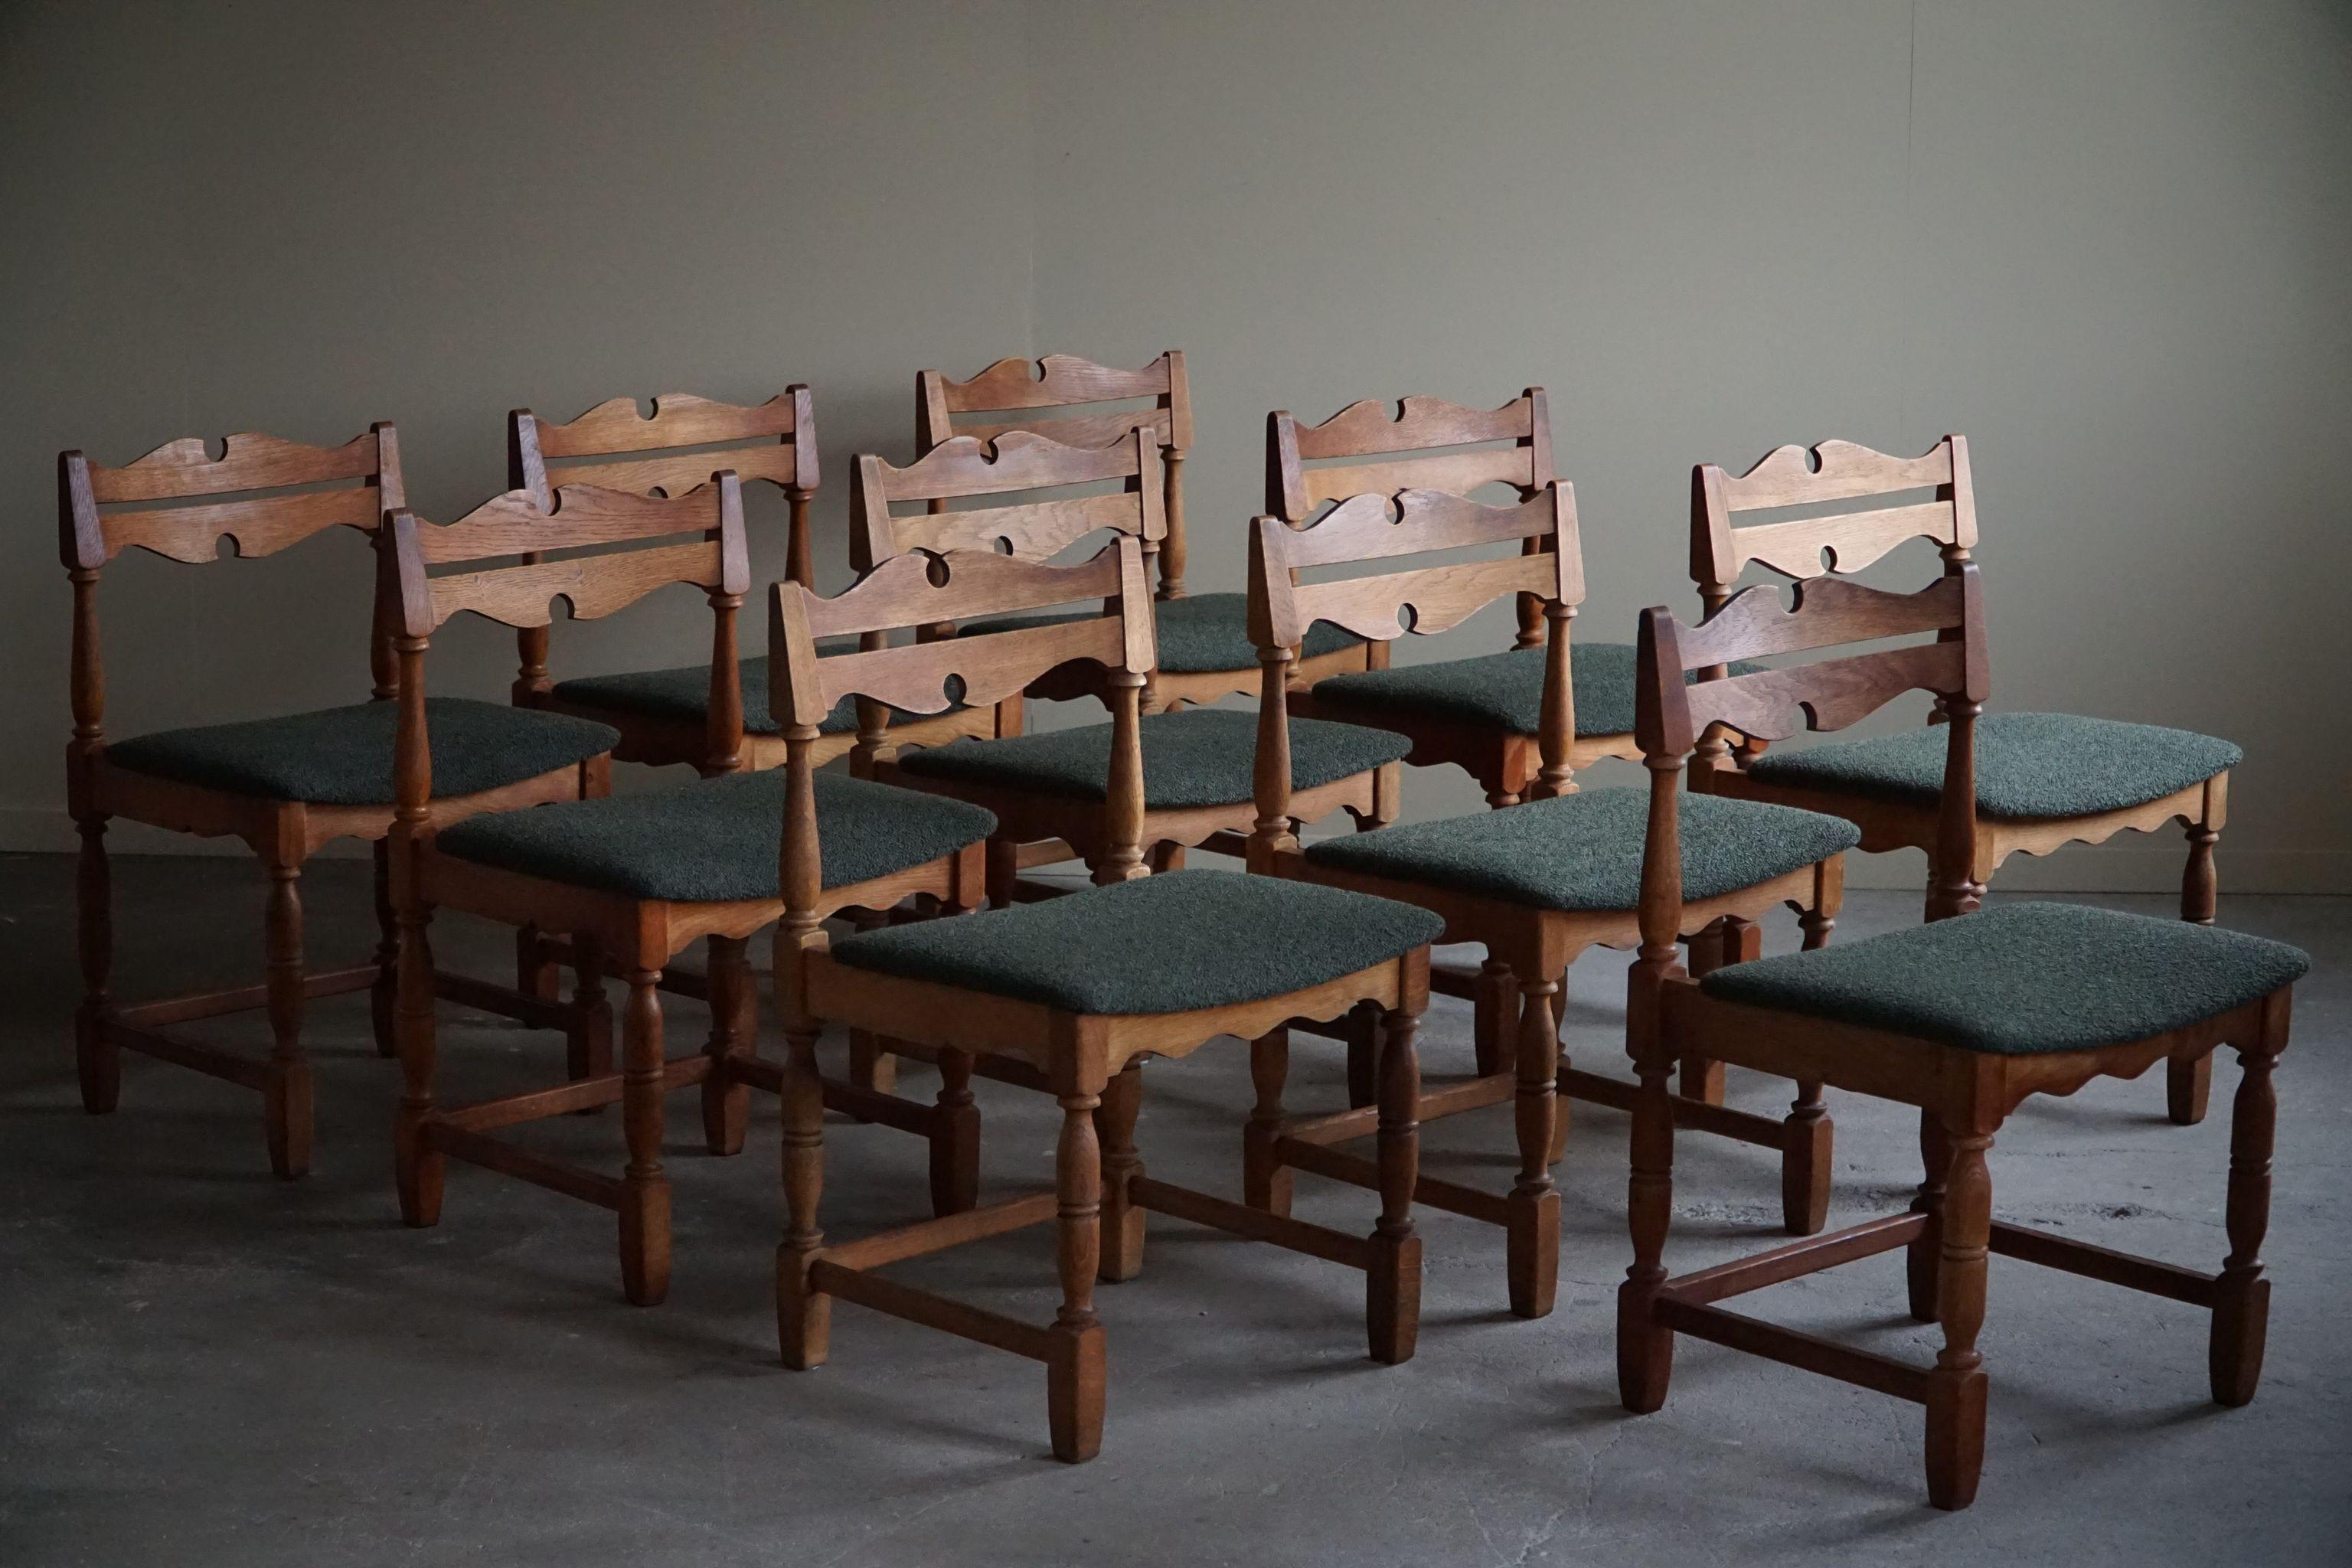 Un ensemble classique de 10 chaises de salle à manger en chêne massif, fabriquées dans le style de HENRY. Fabriqué par un ébéniste danois dans les années 1960. Sièges retapissés en bouclette verte. 

Cet ensemble brutal sculptural s'harmonise avec